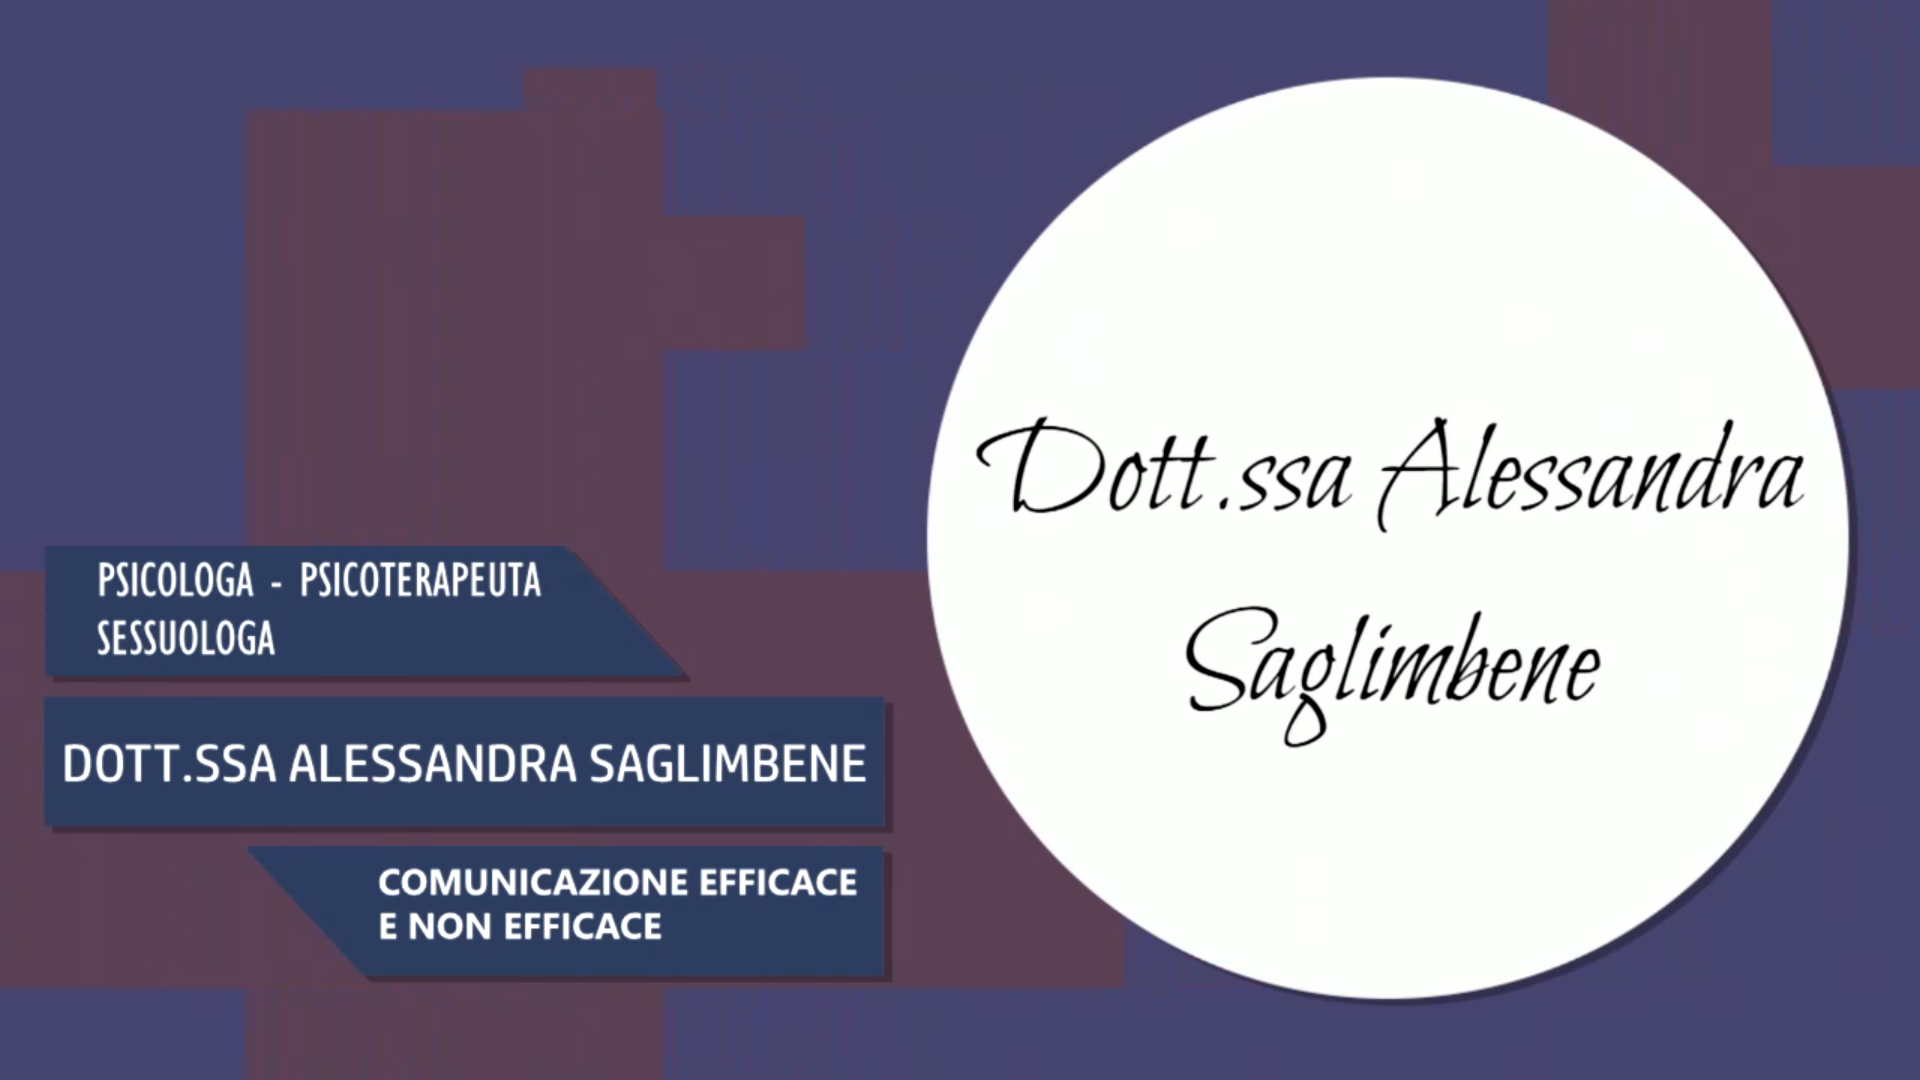 Intervista alla Dott.ssa Alessandra Saglimbene – Comunicazione efficace e non efficace